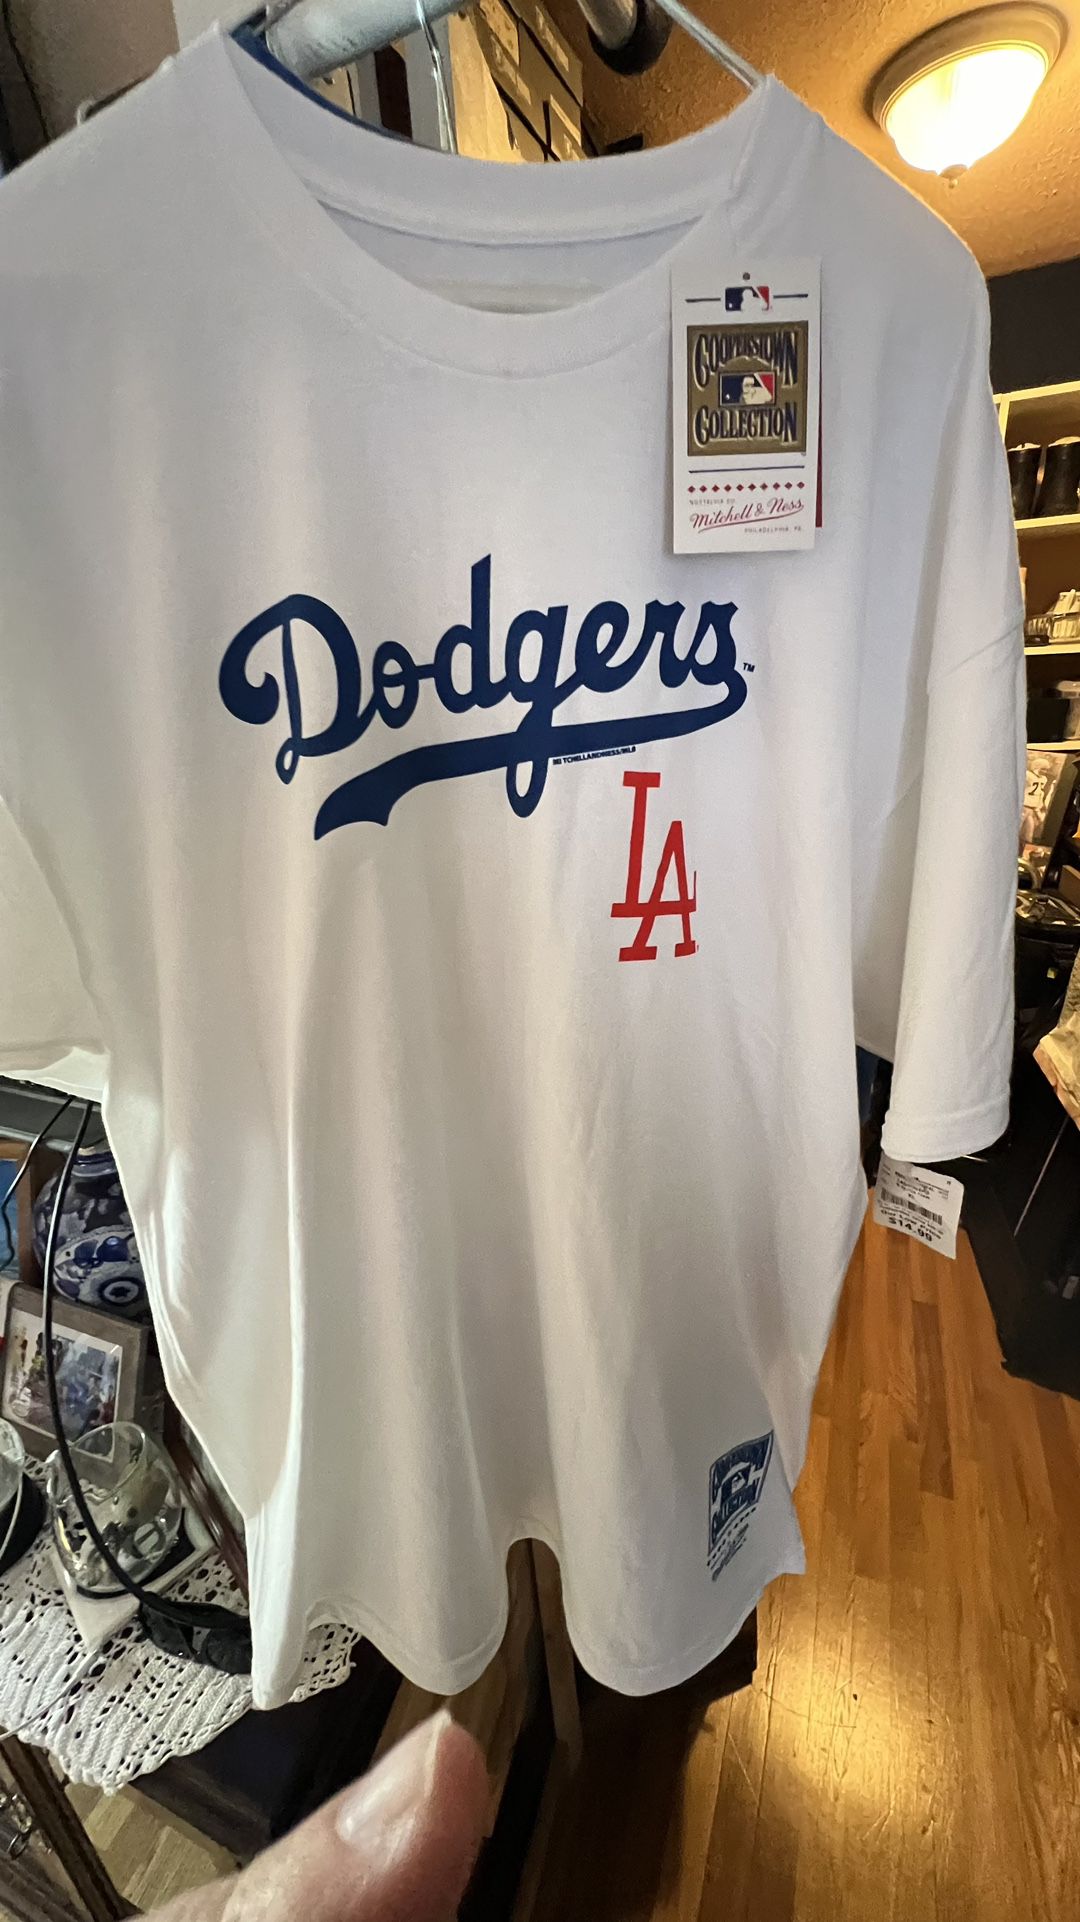 Dodgers Shirt